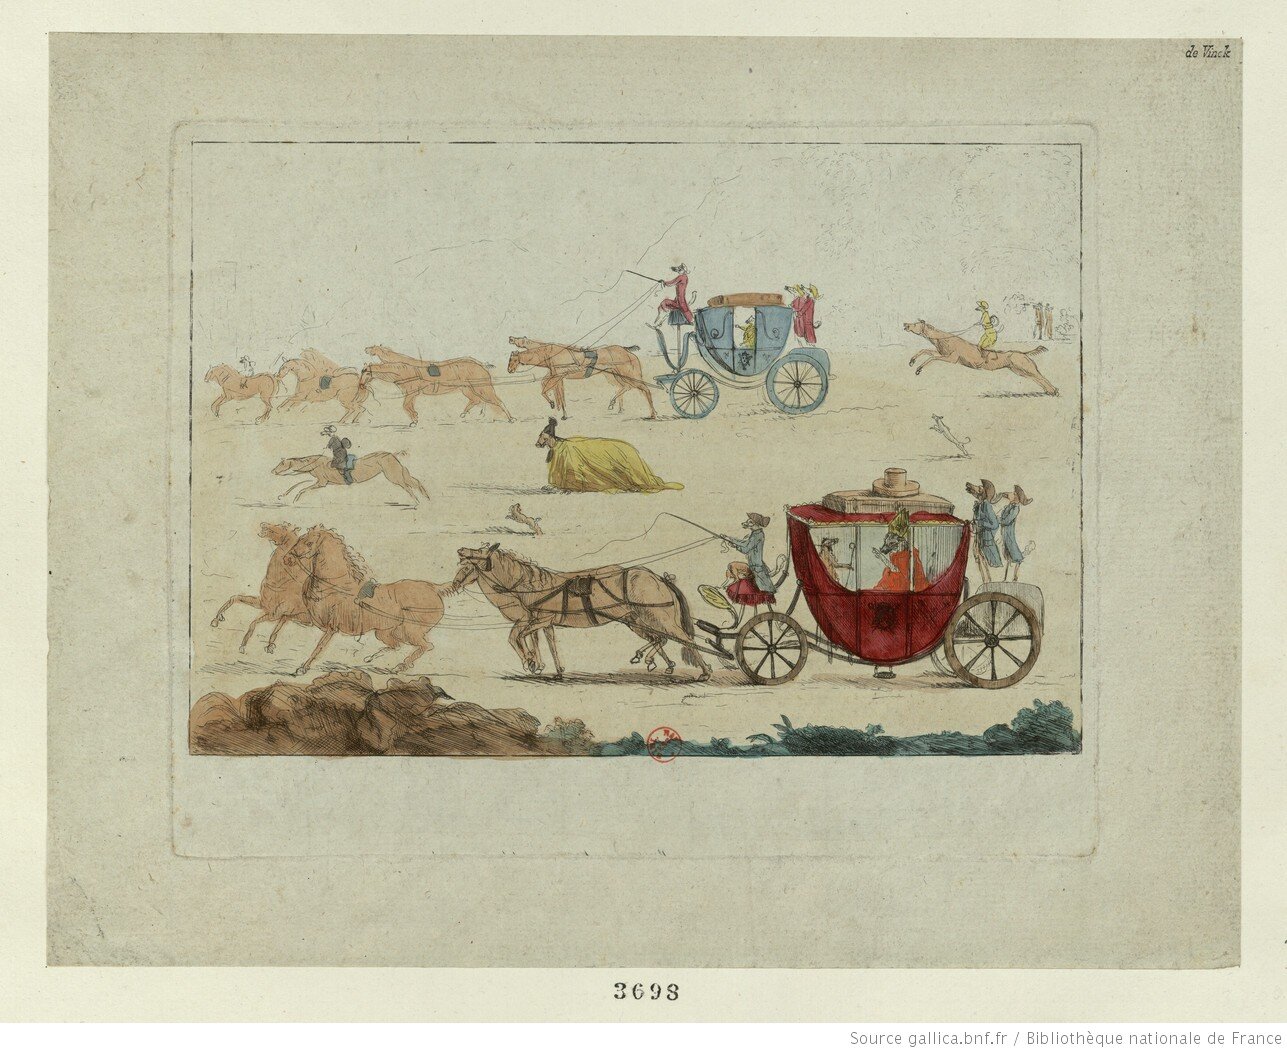 Ilustracja przedstawia ciągnięte przez konie karety, załadowane na dachu skrzyniami. W karetach jadą zwierzęta w ludzkich ubraniach.